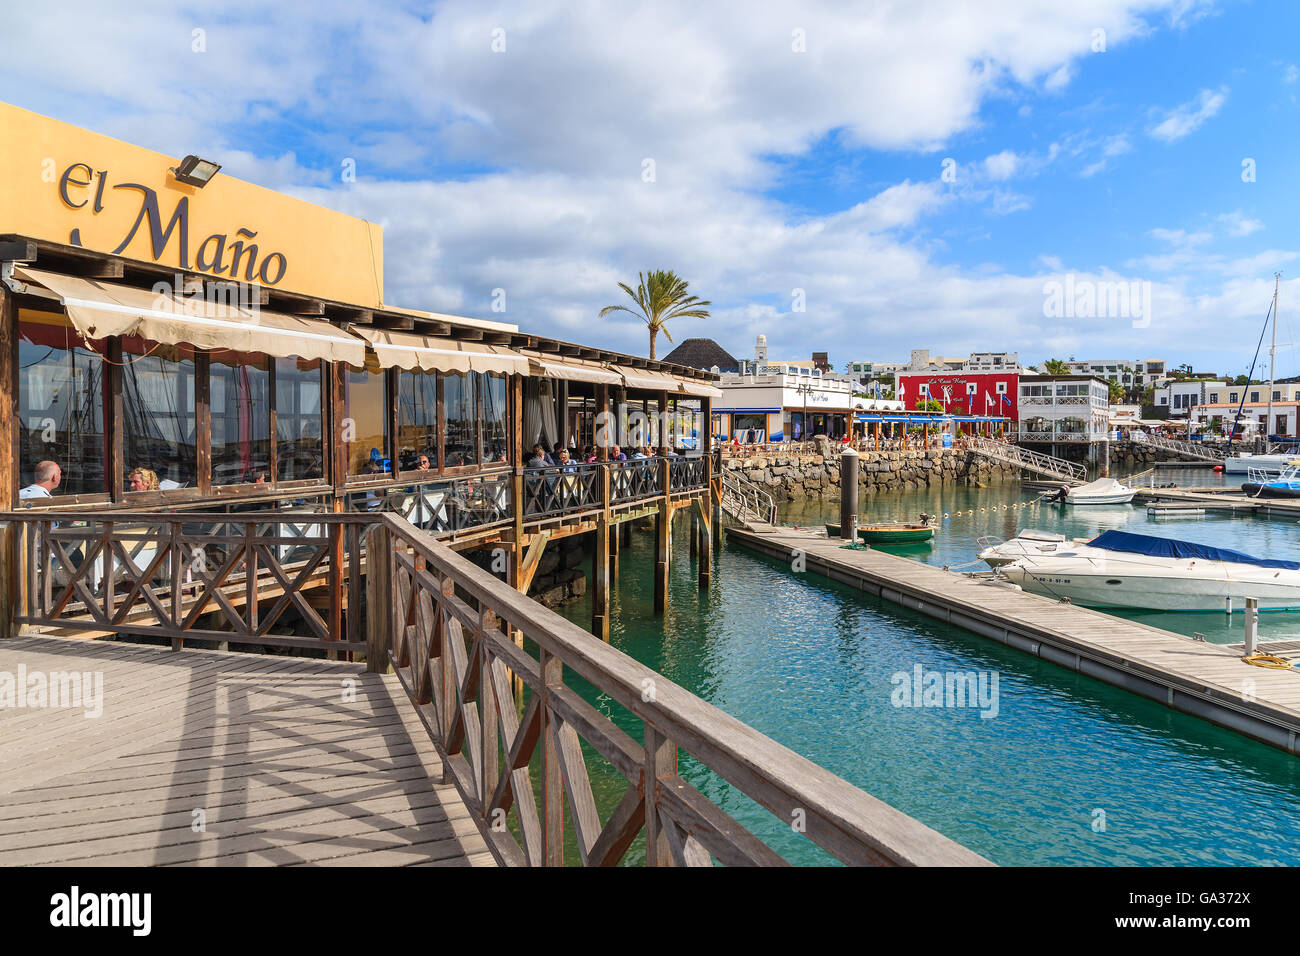 MARINA RUBICON, Insel LANZAROTE-JAN 17, 2015: Fußgängerbrücke zum Restaurant im Hafen Rubicon. Kanarischen Inseln sind sehr beliebtes Urlaubsziel aufgrund der sonnigen tropisches Klima das ganze Jahr. Stockfoto